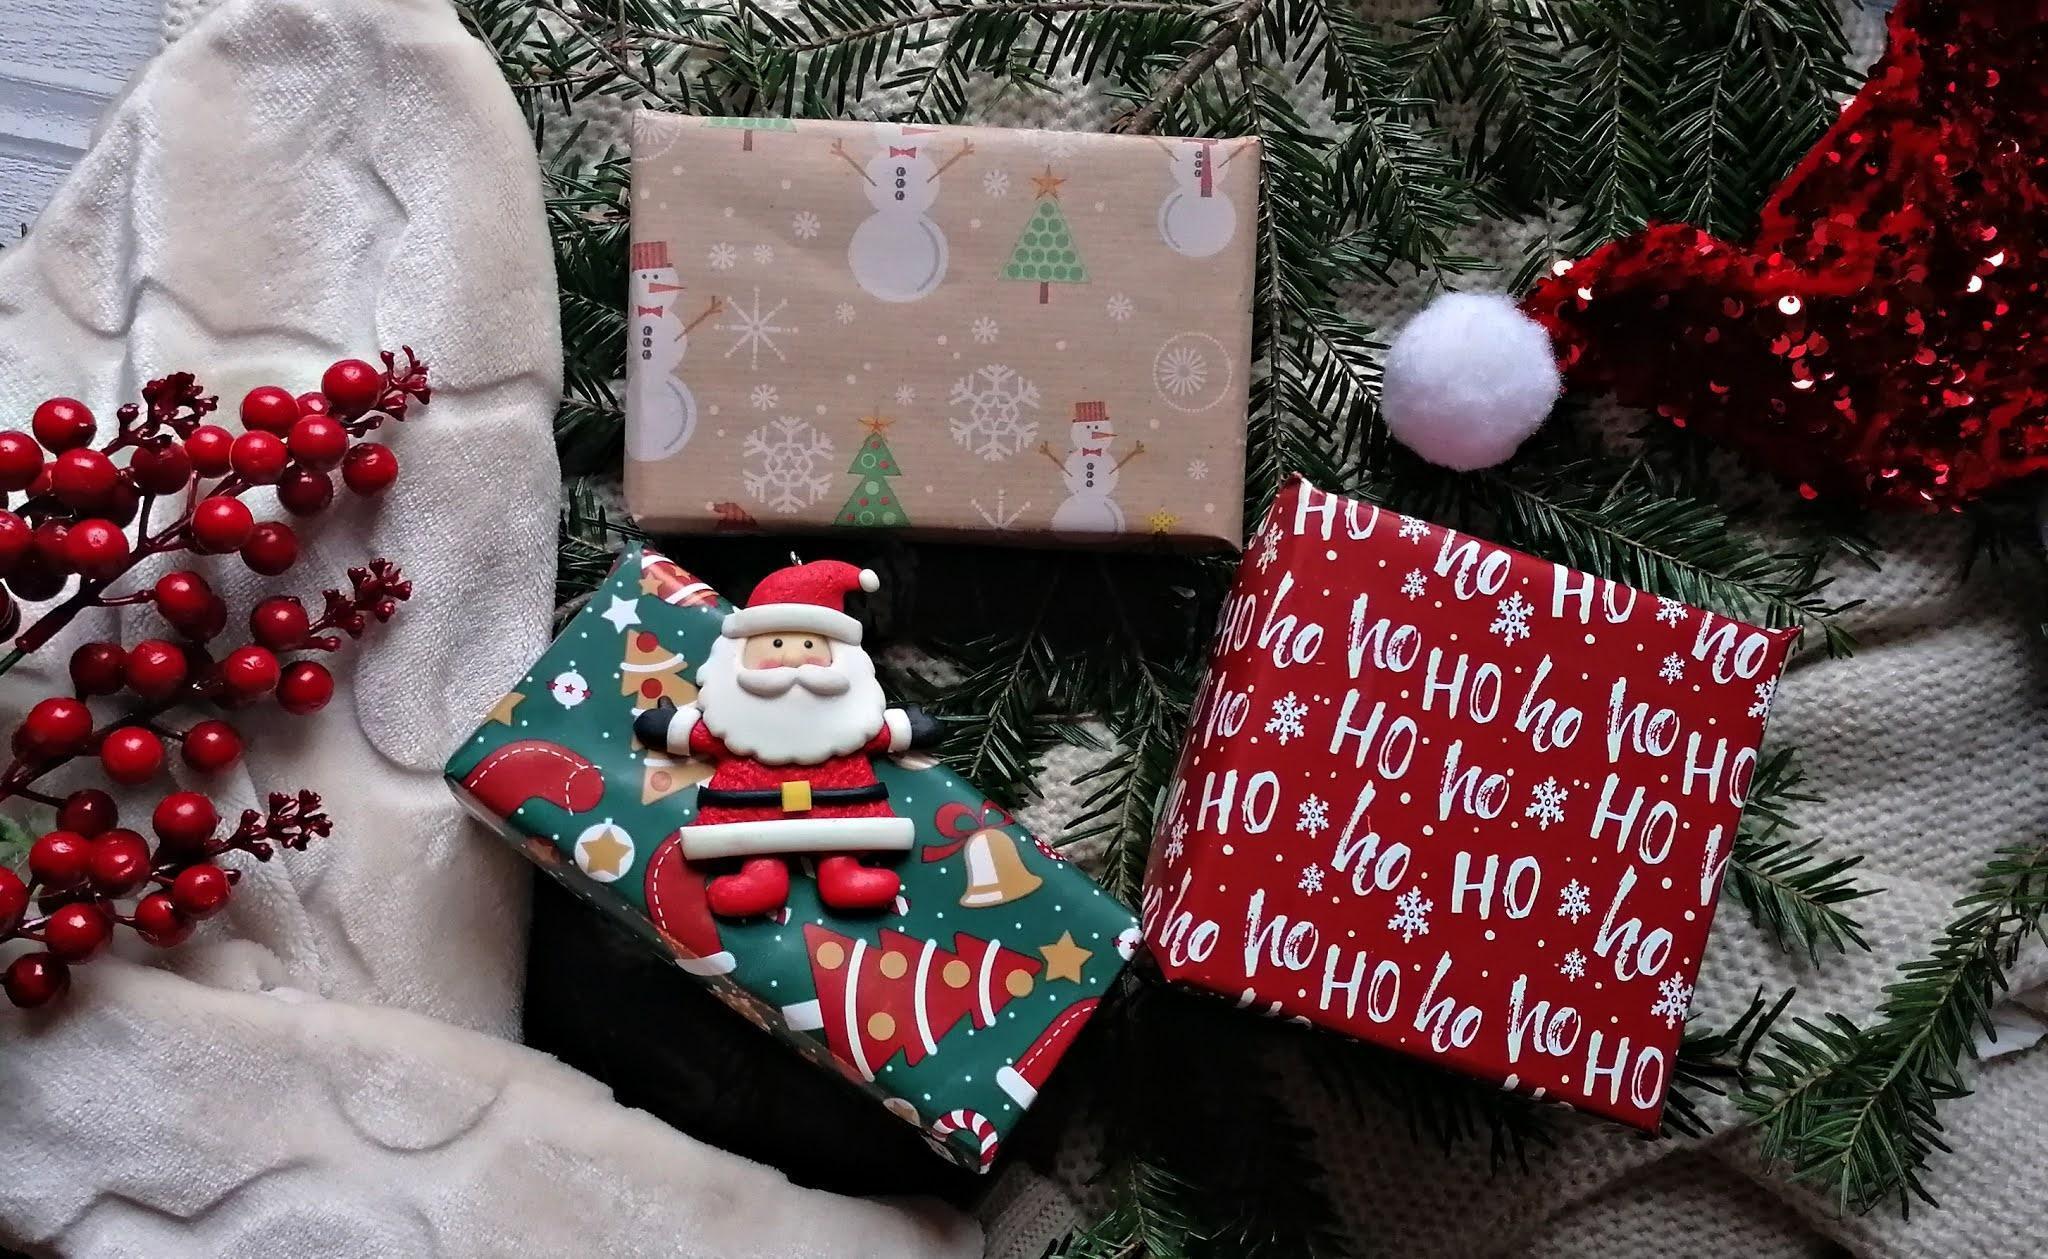 Cele cinci secrete pentru a cumpăra cadoul ideal de Crăciun